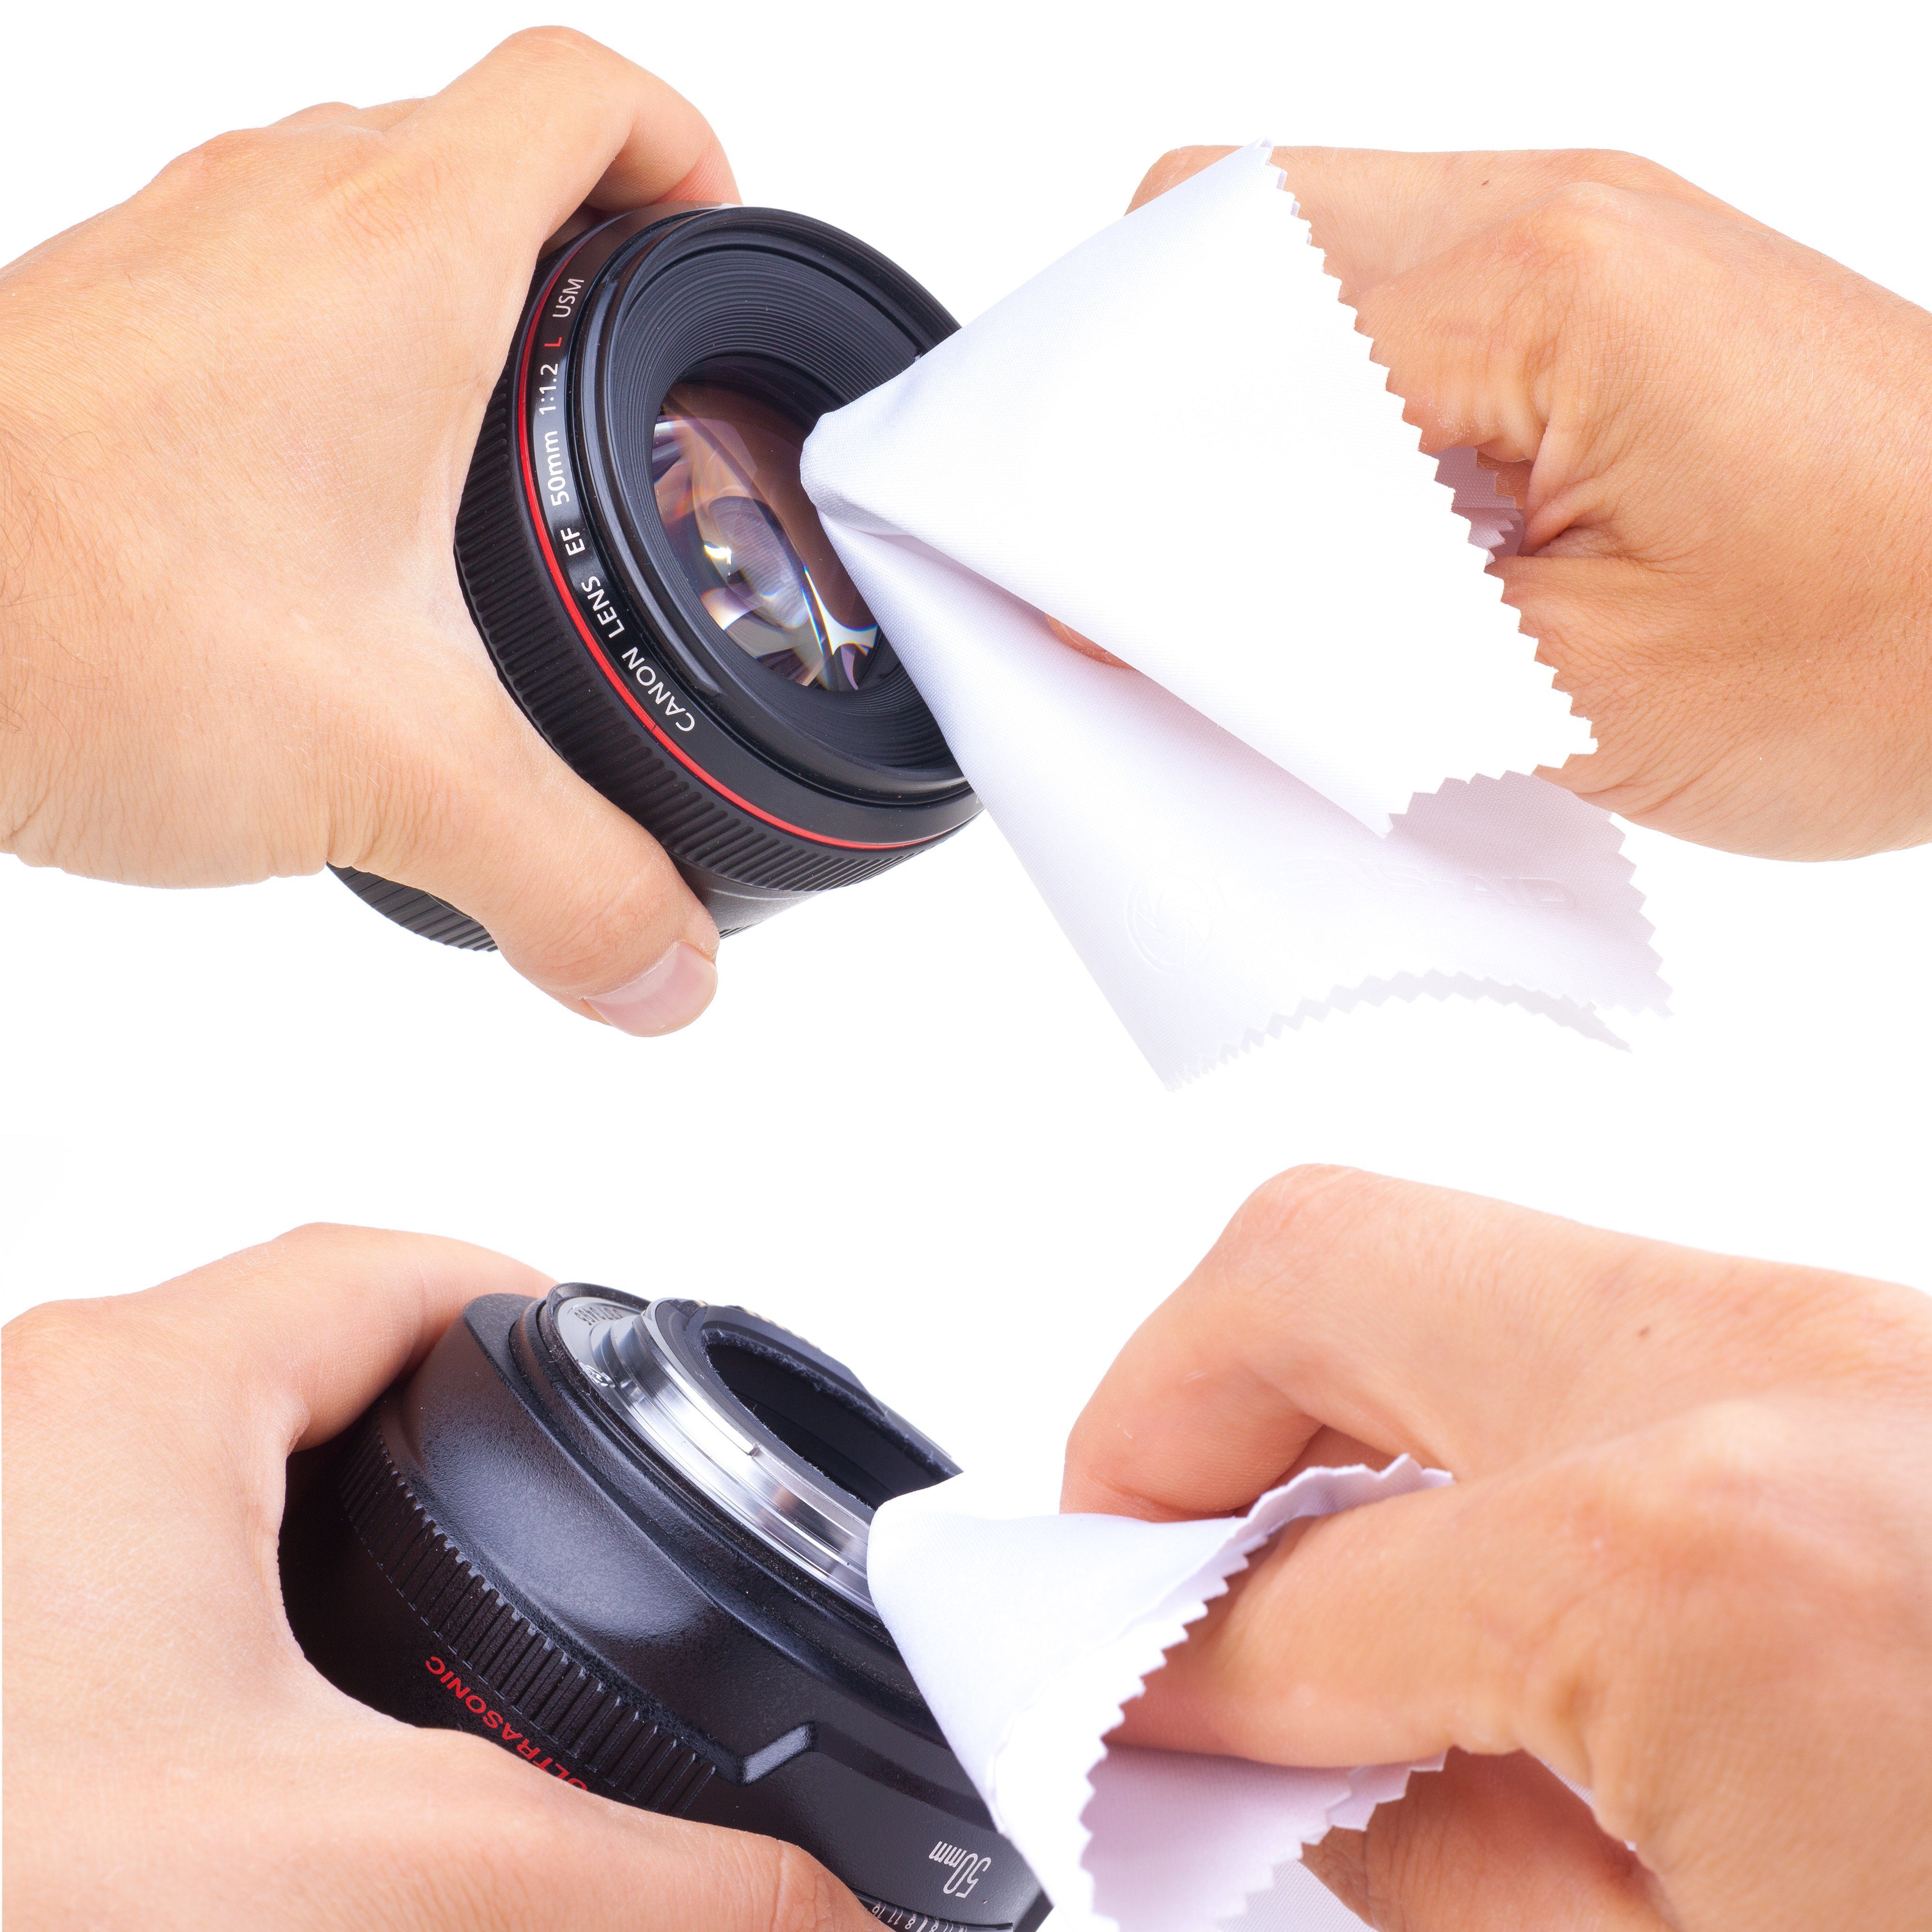 oder Lens-Aid 5er 10er Set special Smartphone Kamera Display, und praktischem in edition. Objektiv, Kamerazubehör-Set Brillen-Putztuchim als Mikrofaser-Reinigungstücher Filter, Set Mikrofasertuch Aufbewahrungsbeutel: für